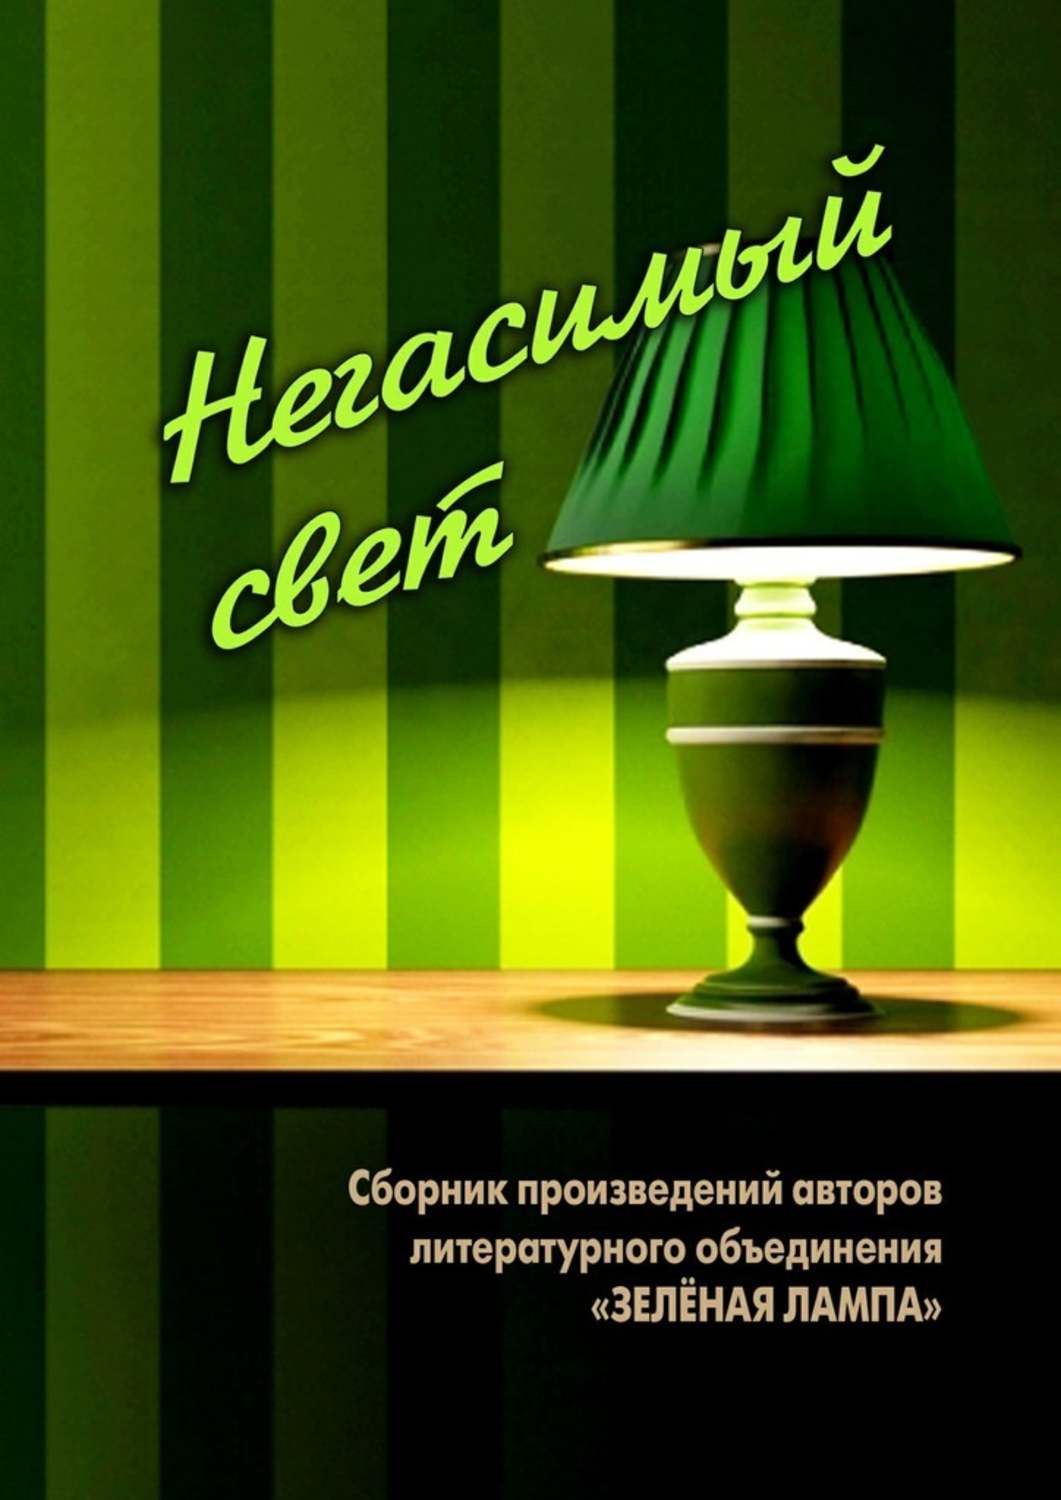 Слова зеленая лампа